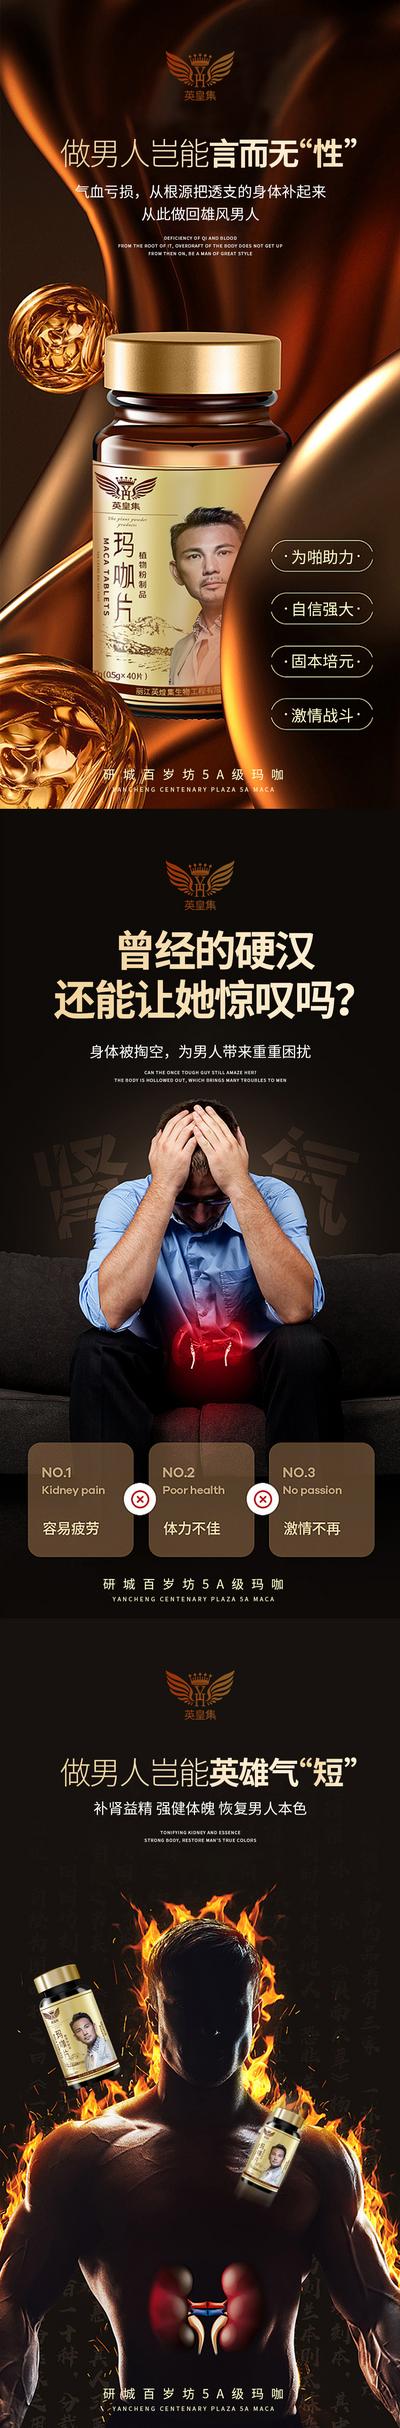 南门网 海报 补肾 男性 健康 产品 保健 激情